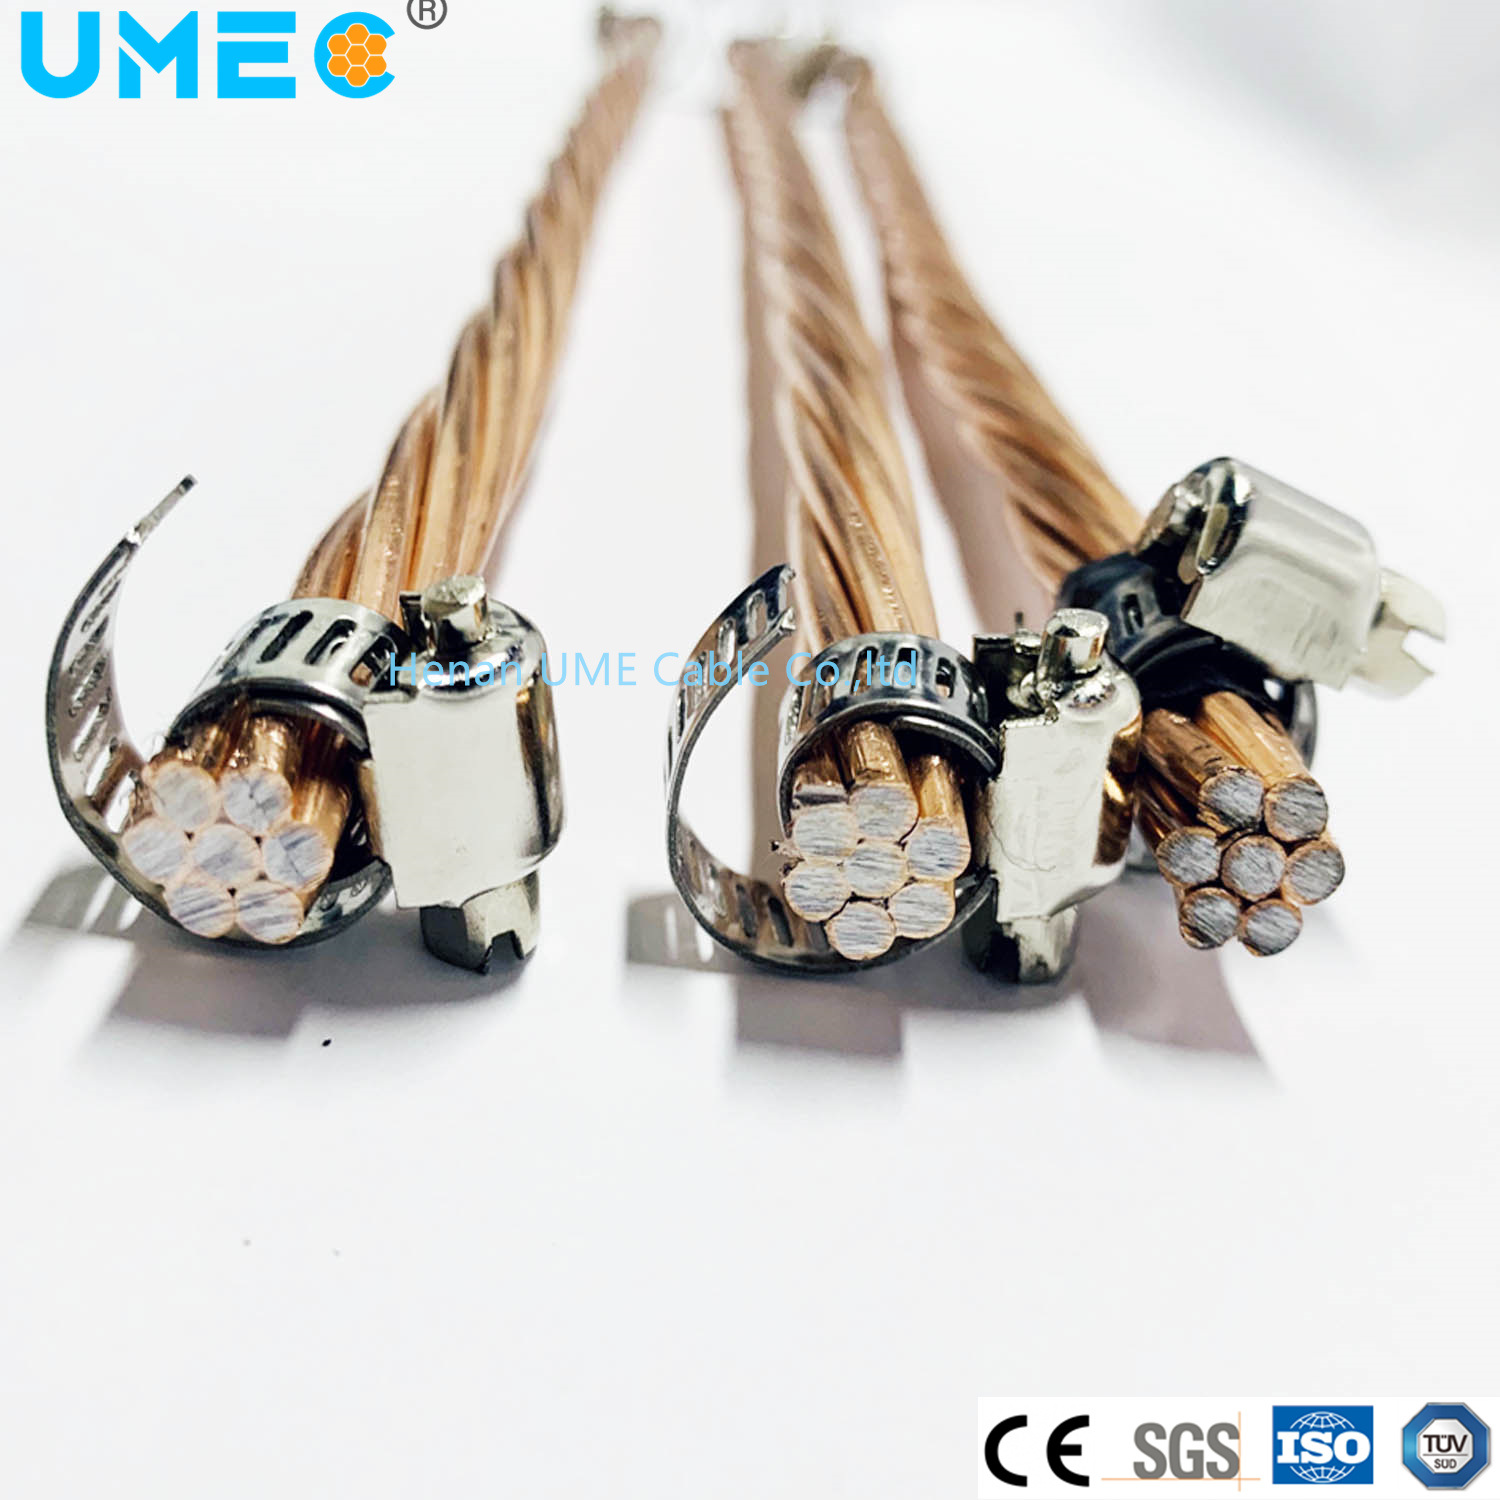 
                CCS elettrico in acciaio rivestito di rame nudo utilizzato per il cavo coassiale 15-40%iCAS cavo nudo elettrico ricotto e trafilato duro
            